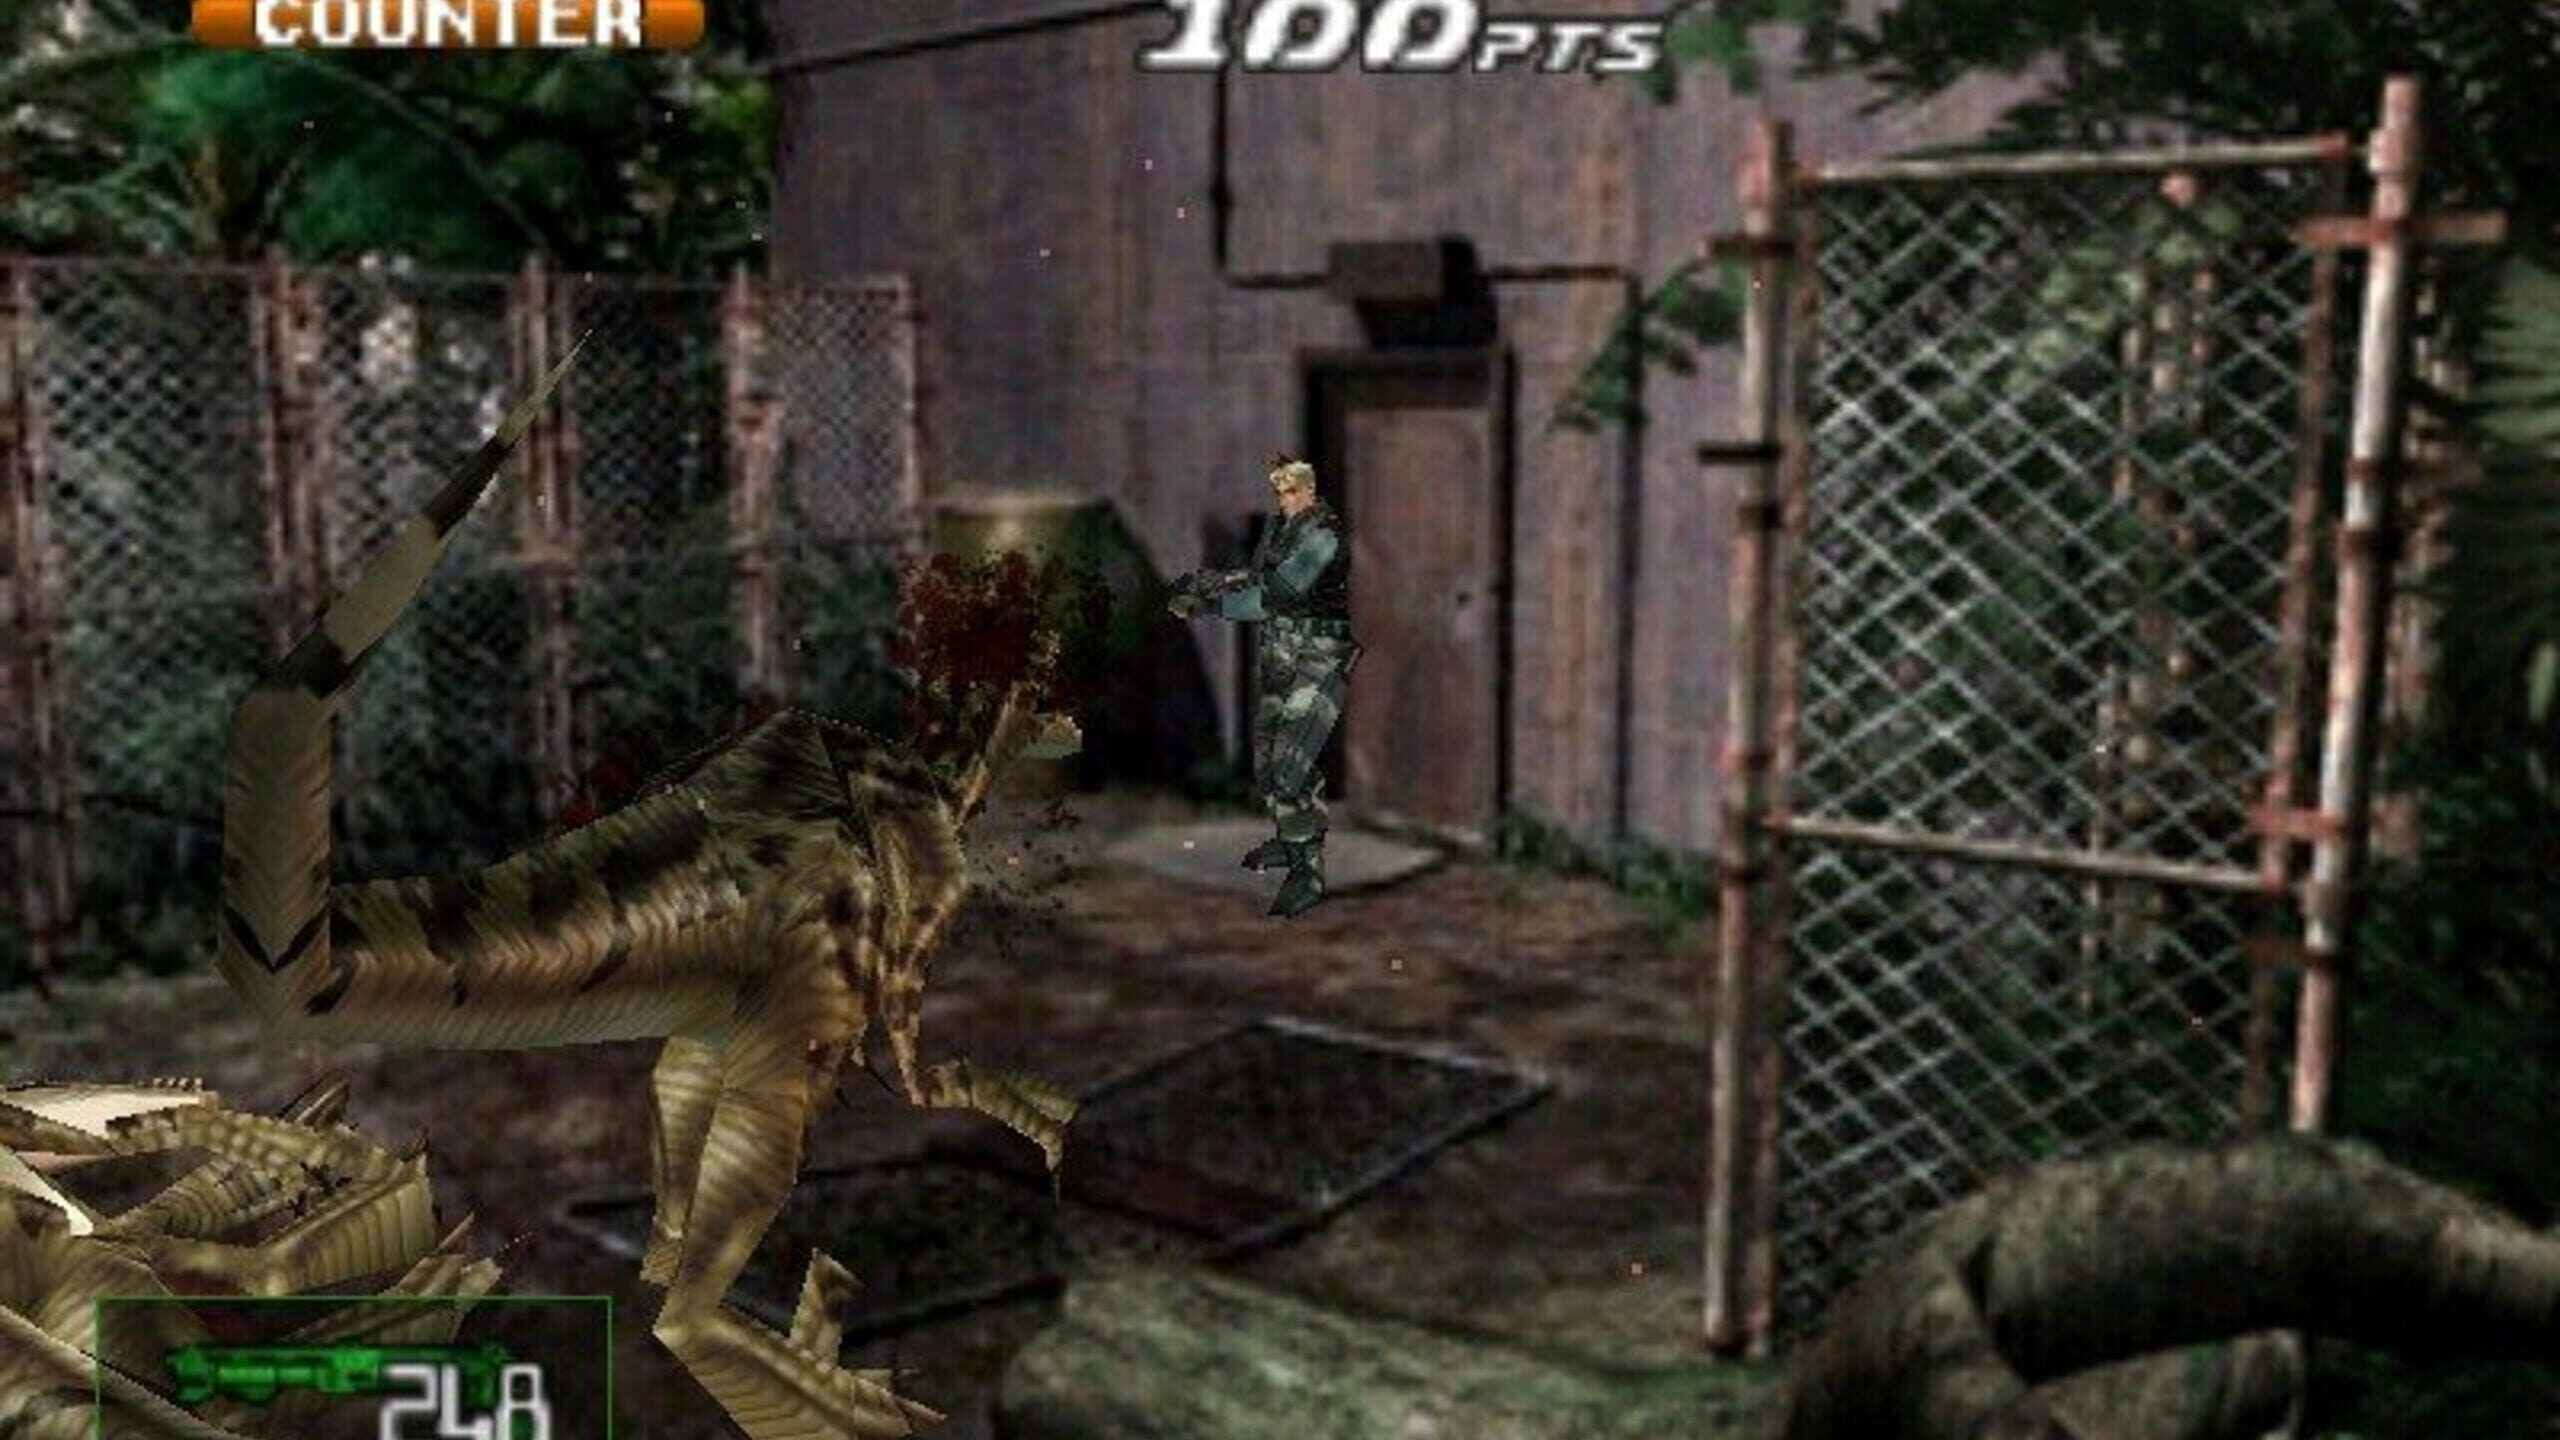 PS1] Dino Crisis 2 (Dublado PT-BR) - Seganet - Retro Games - Fórum SegaNet